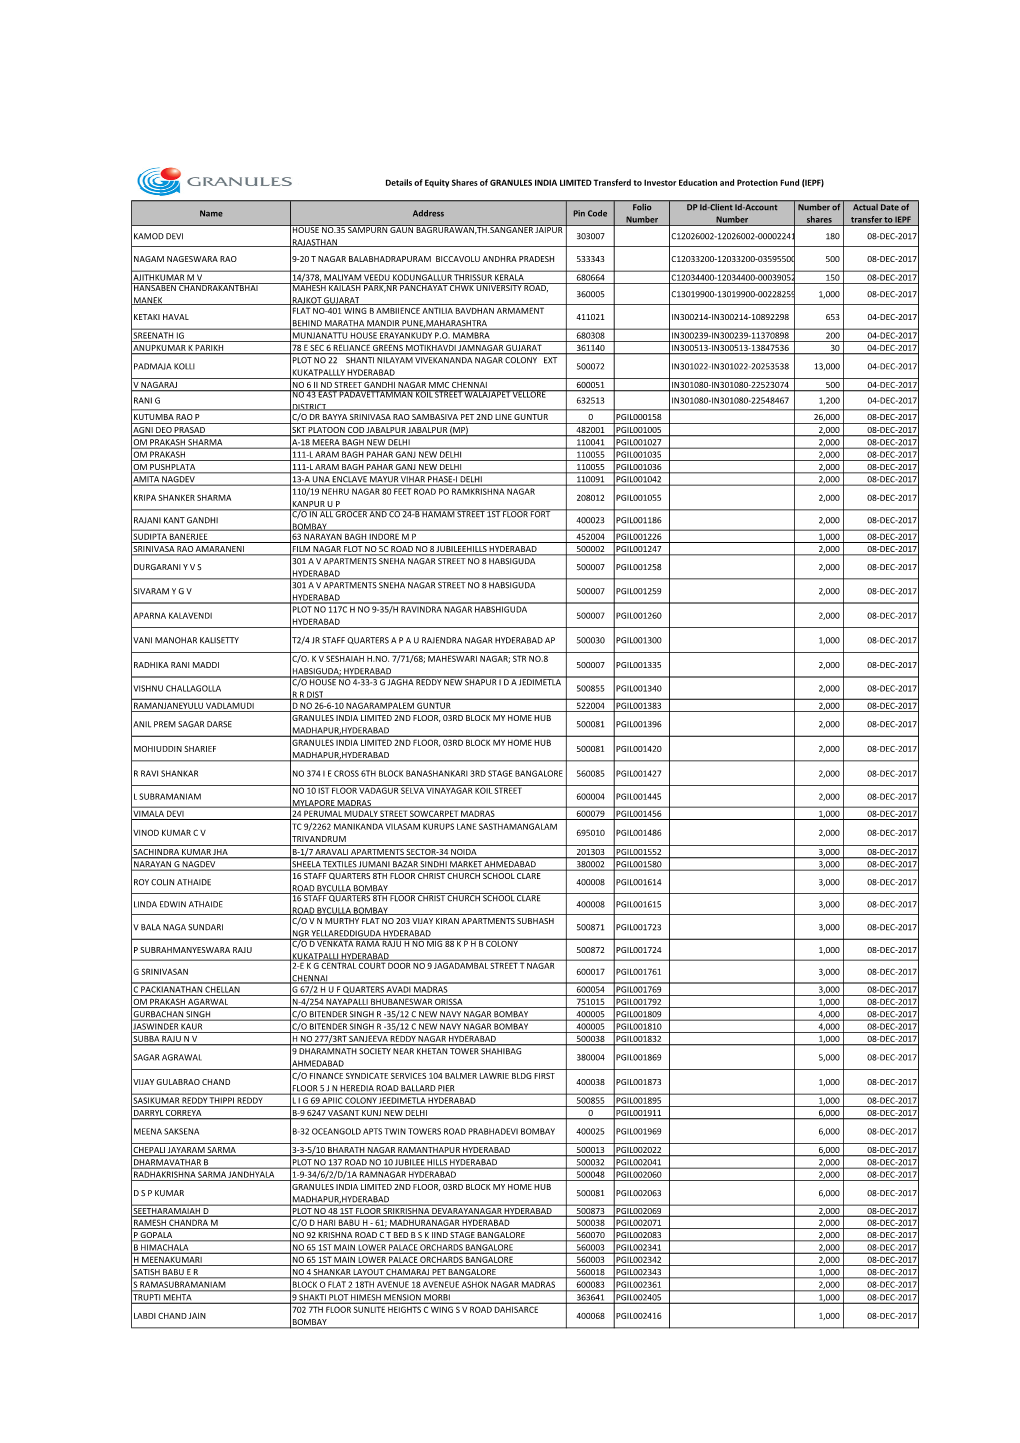 Granules List of IEPF Share Holders.Xlsx